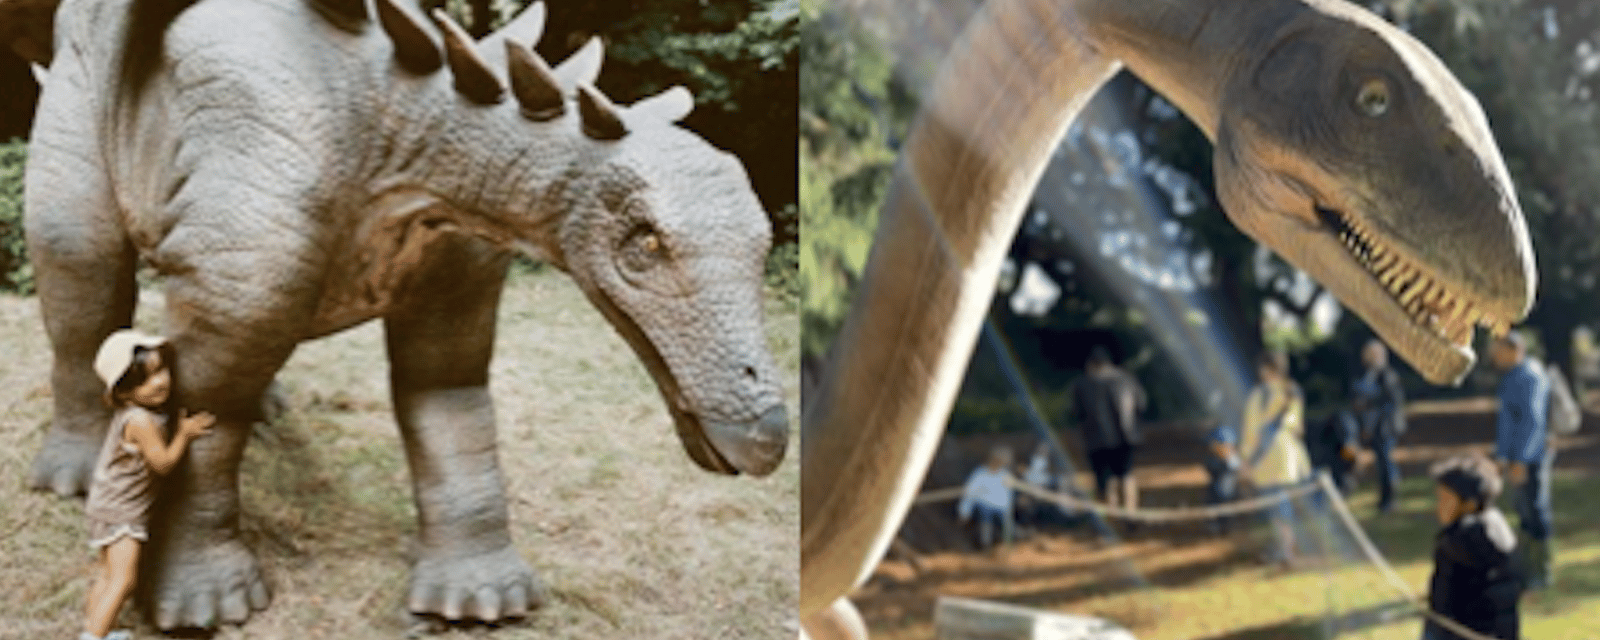 Un parc de la Rive-Sud sera envahi de dinosaures cet été